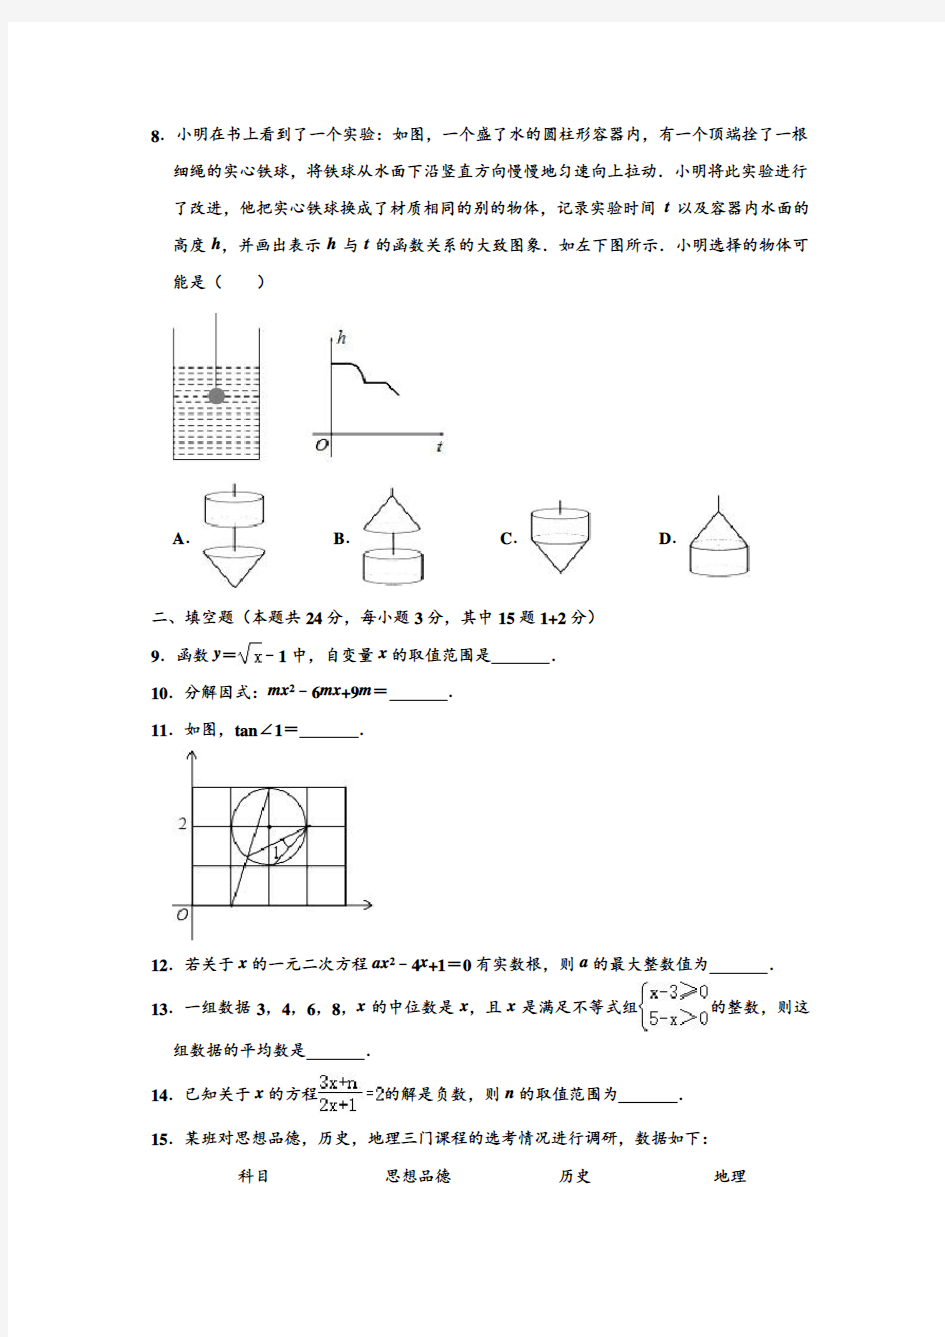 2020年中考数学模拟试卷北京八十中(3月份)中考数学模拟试卷(解析版)